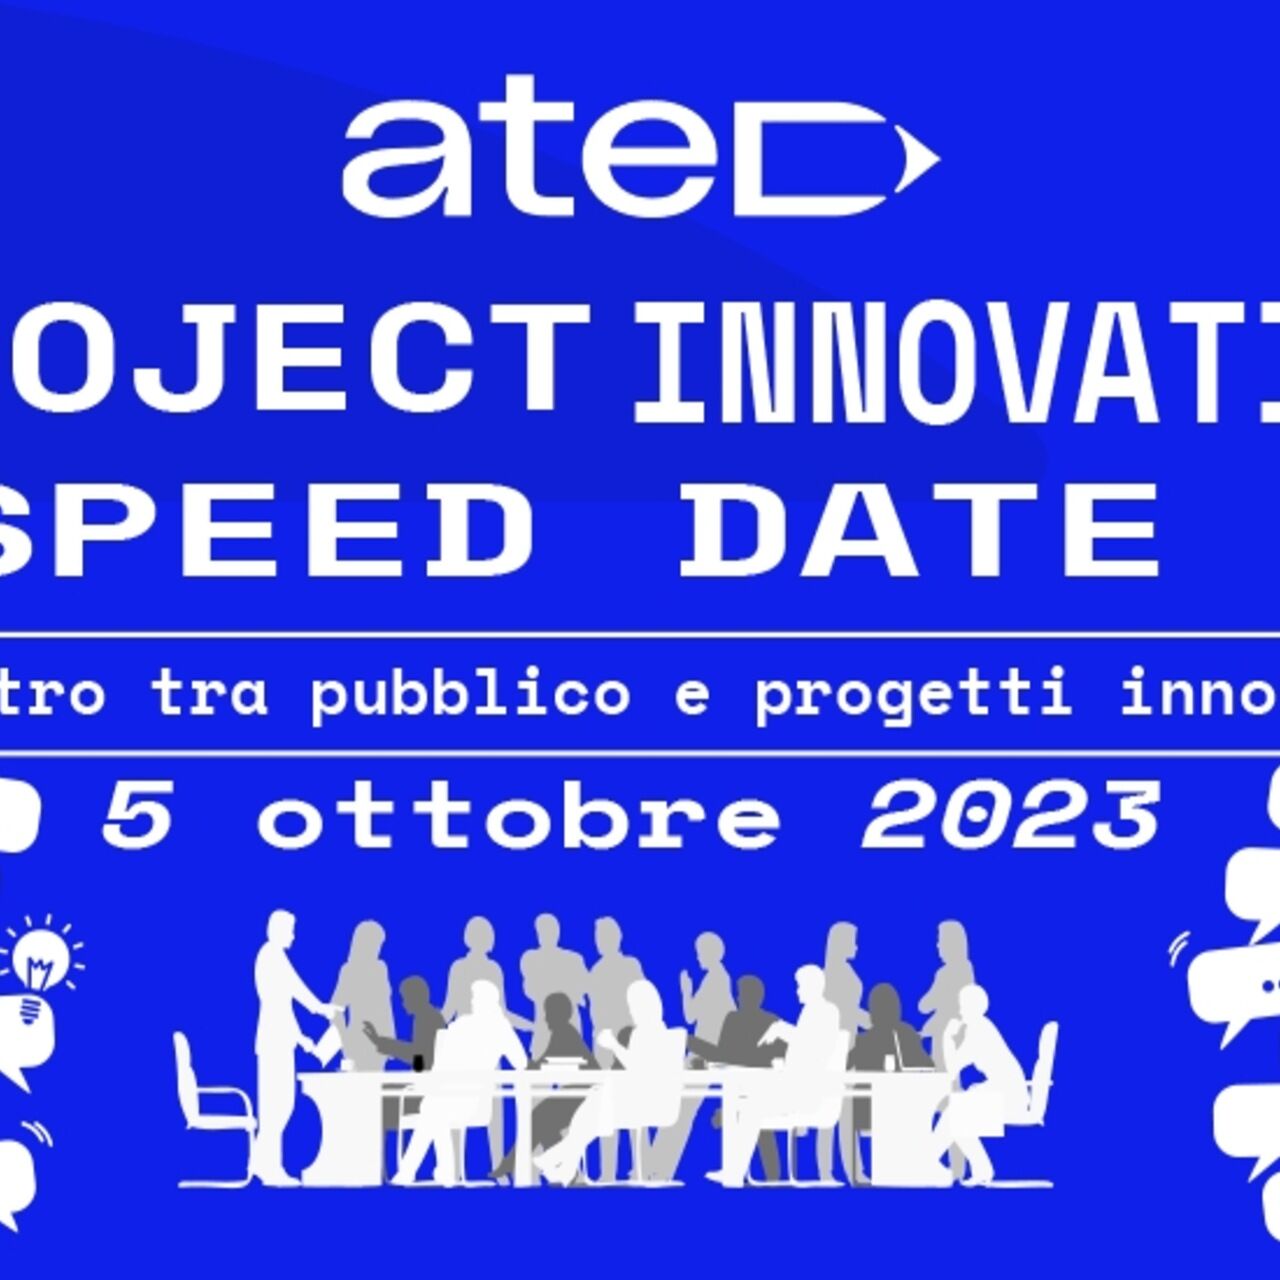 ATED projekti innovatsioonikiiruse kuupäev: plakat ja peamine visuaal